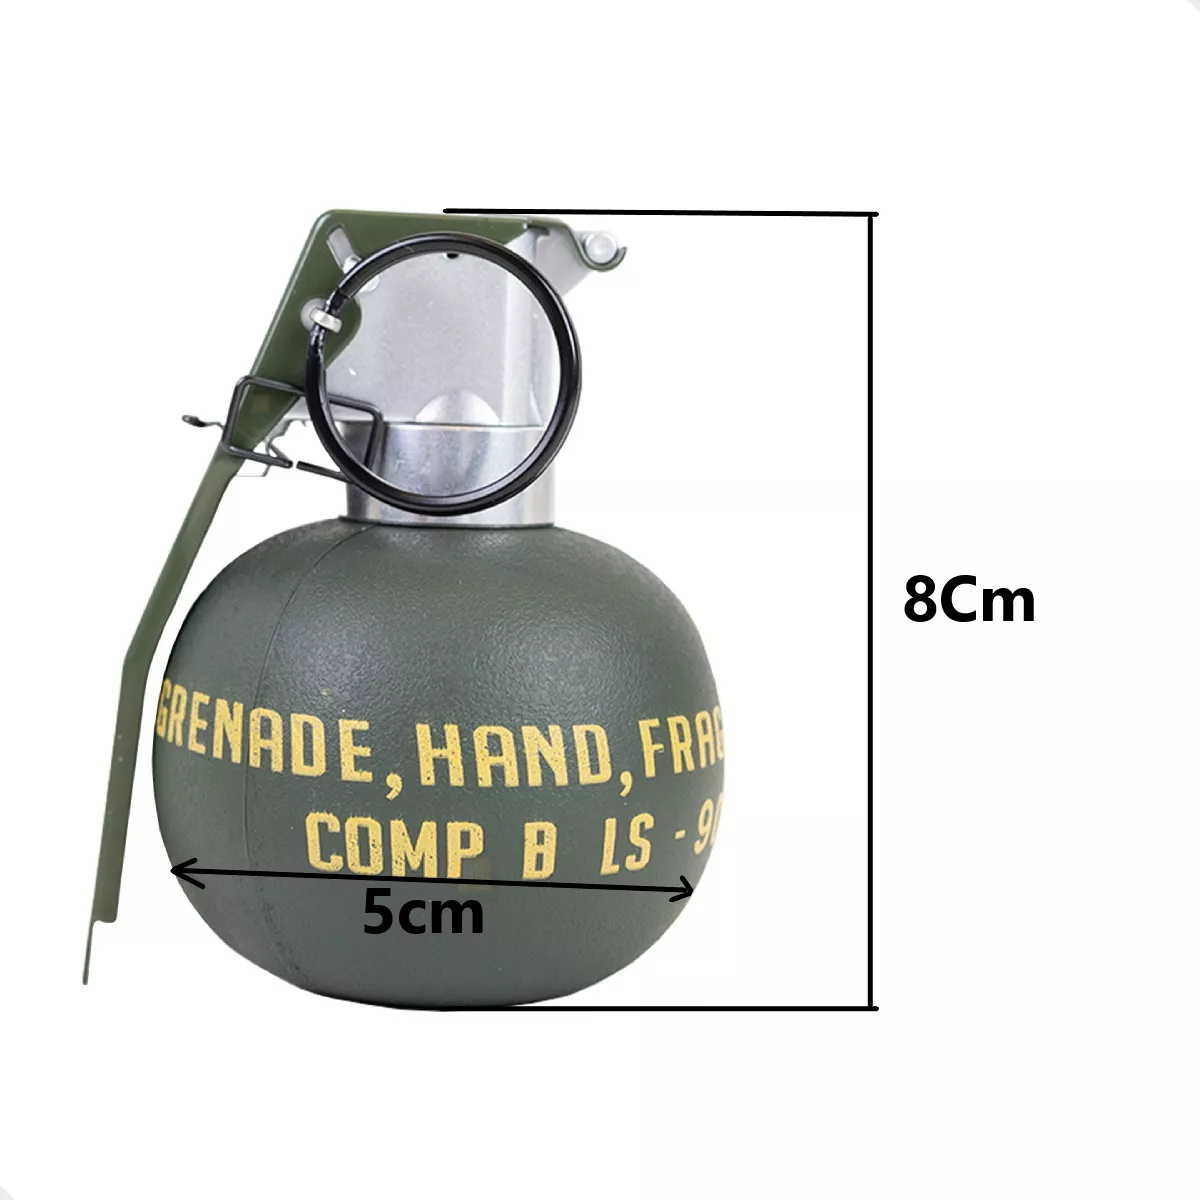 Primeira imagem para pesquisa de granadas airsoft